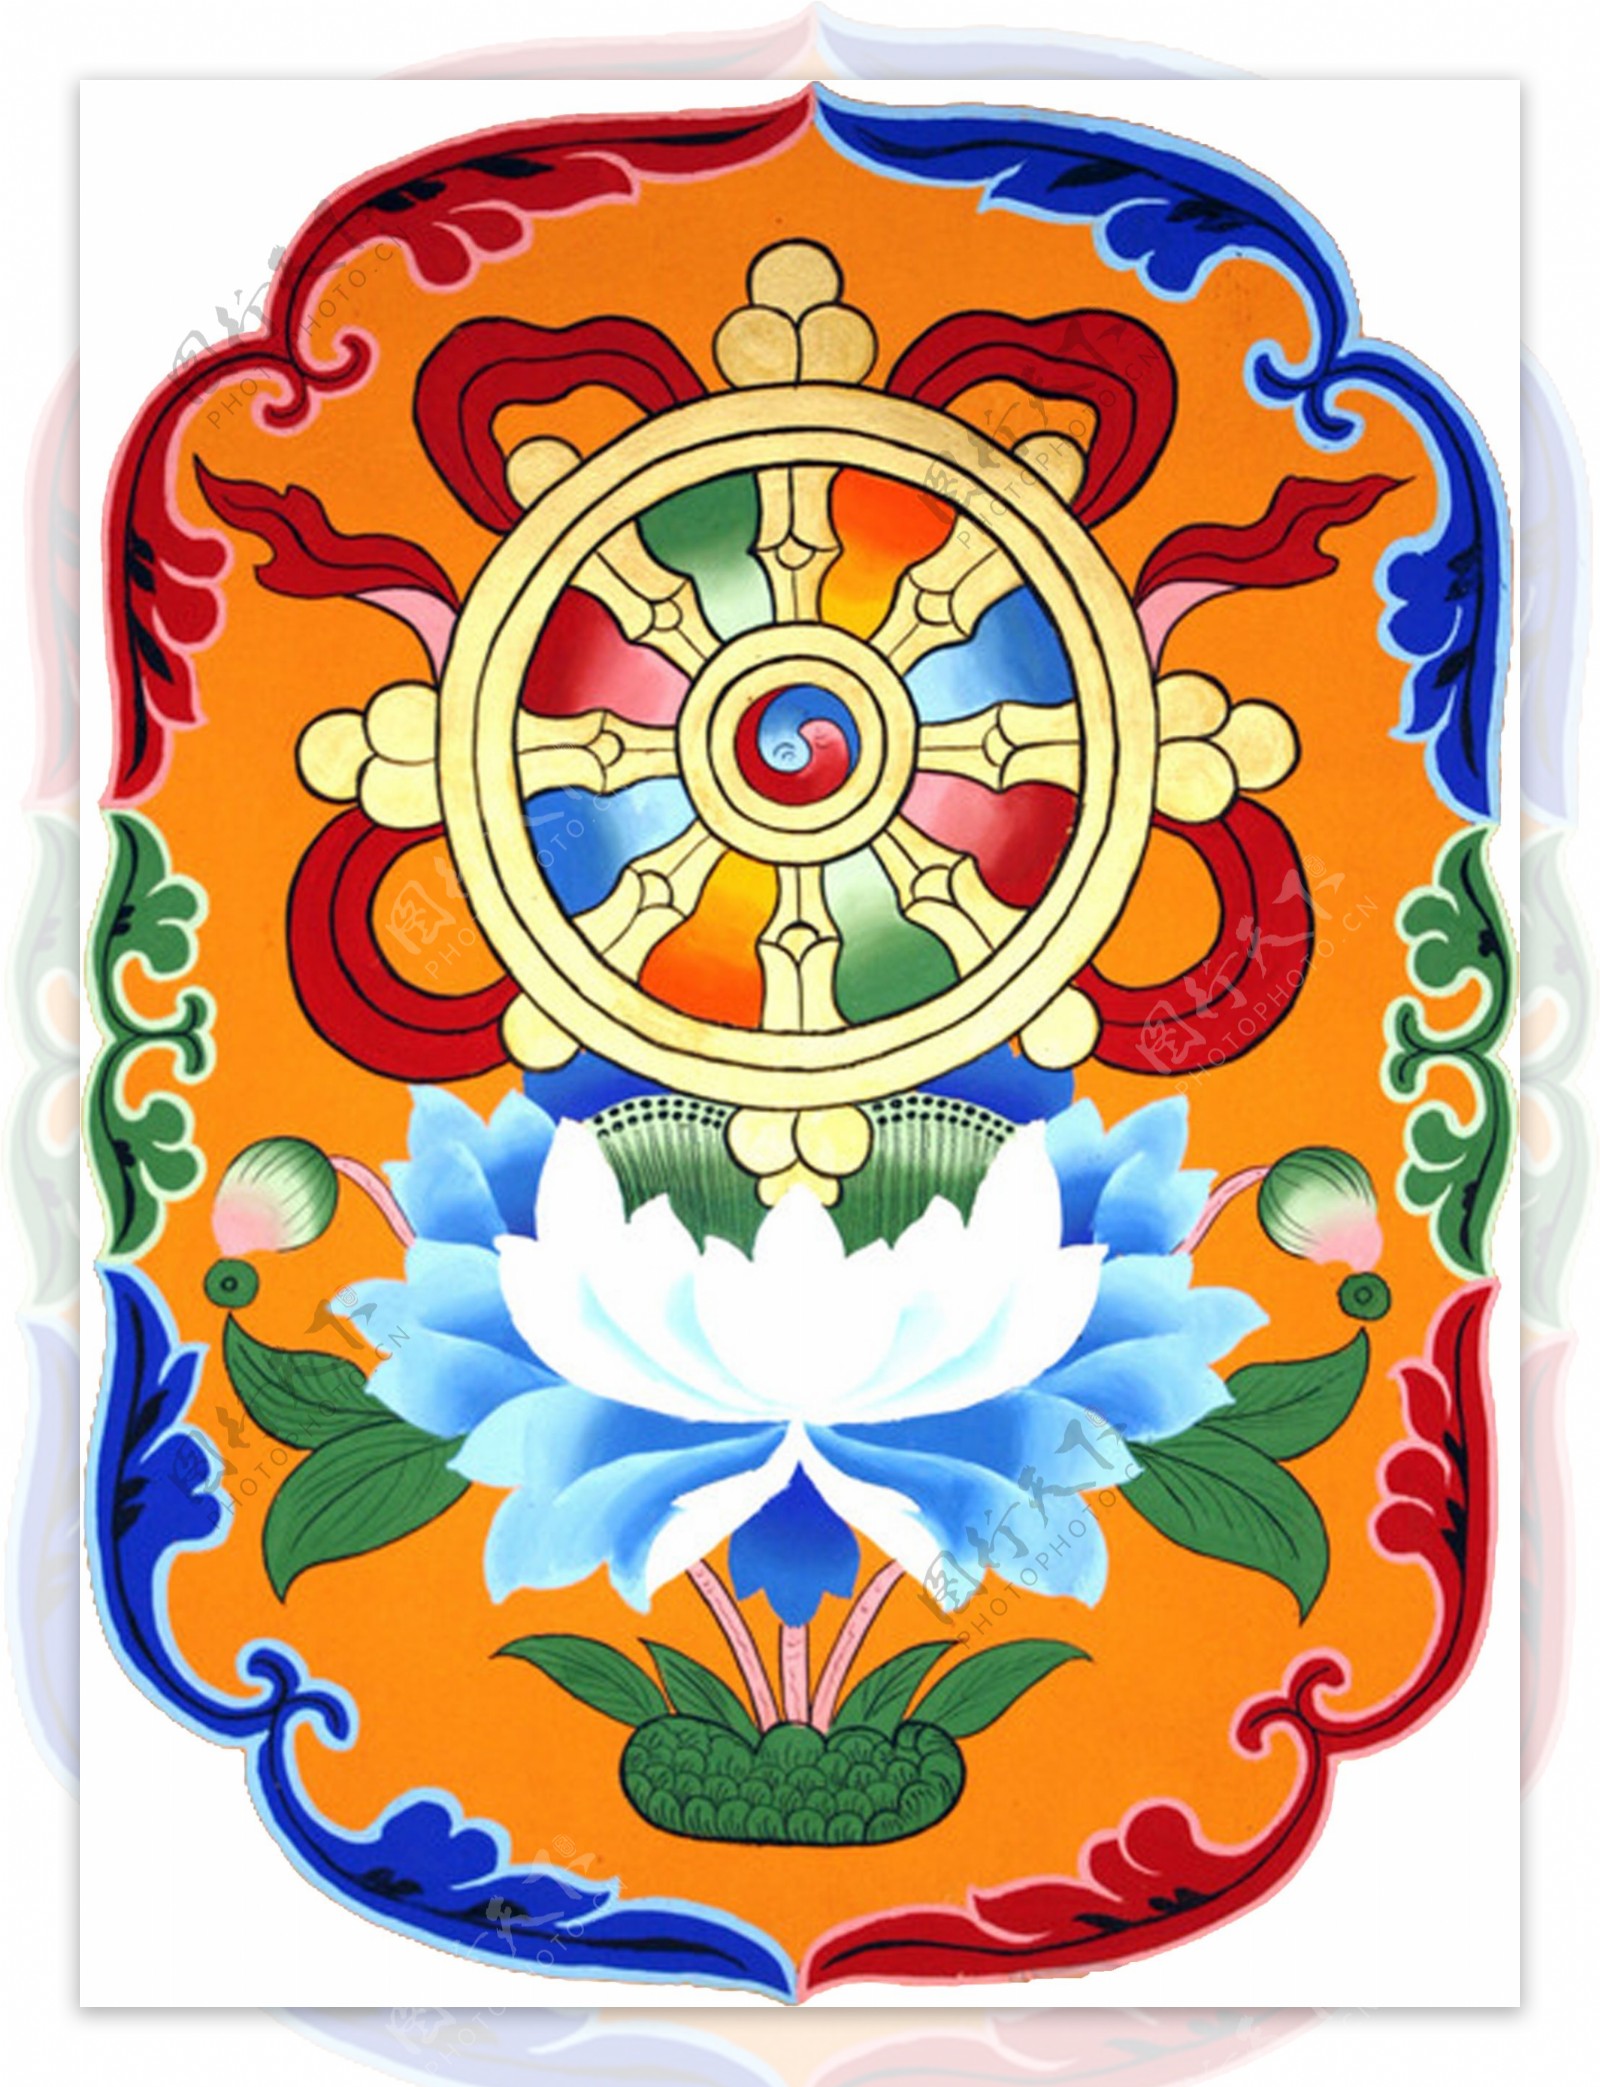 藏族八宝图法轮